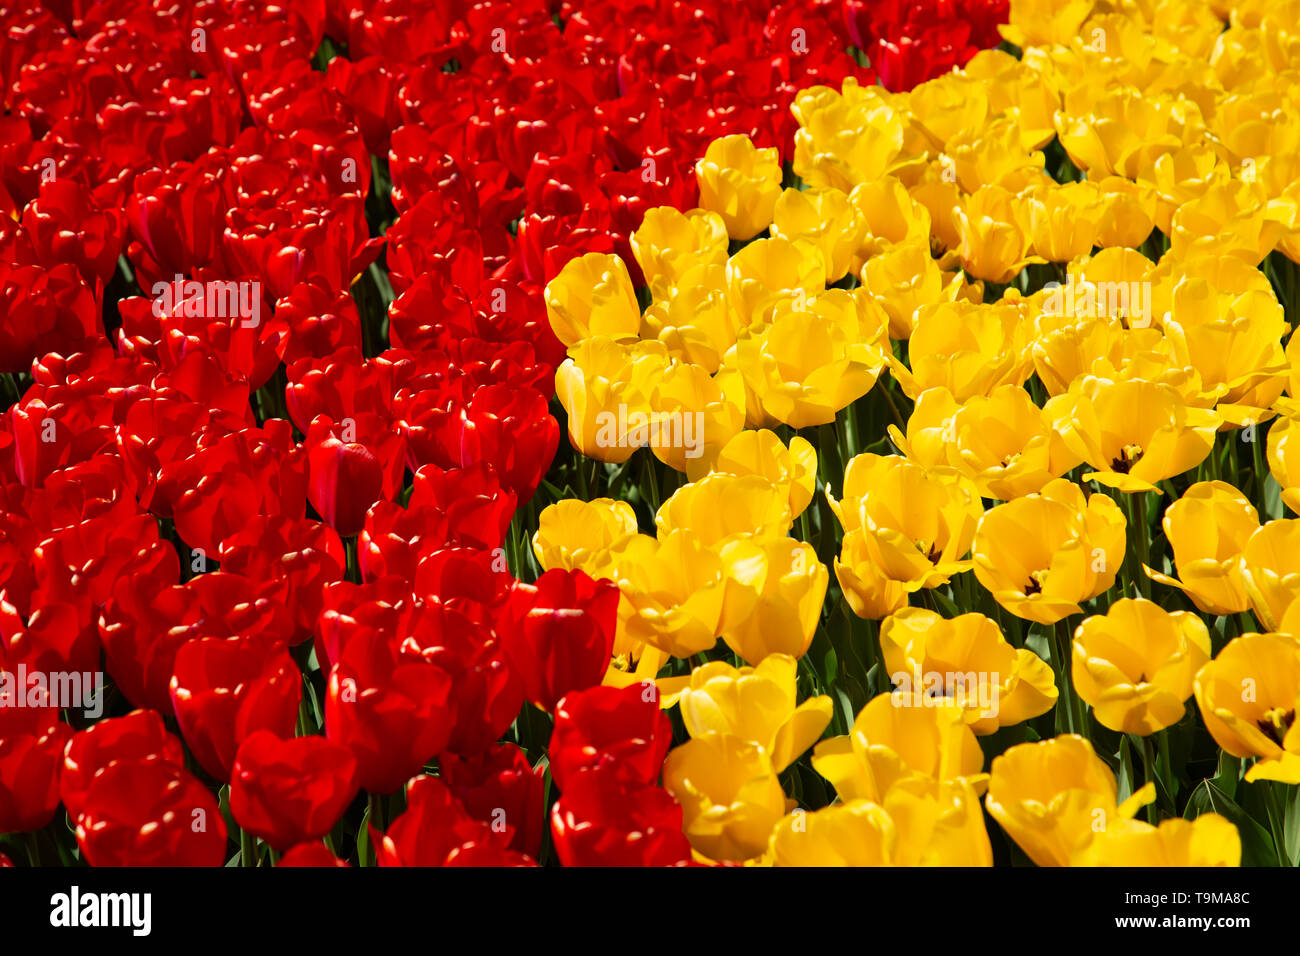 Image de fond de jaune et rouge printemps tulipe pris dans un jardin Banque D'Images